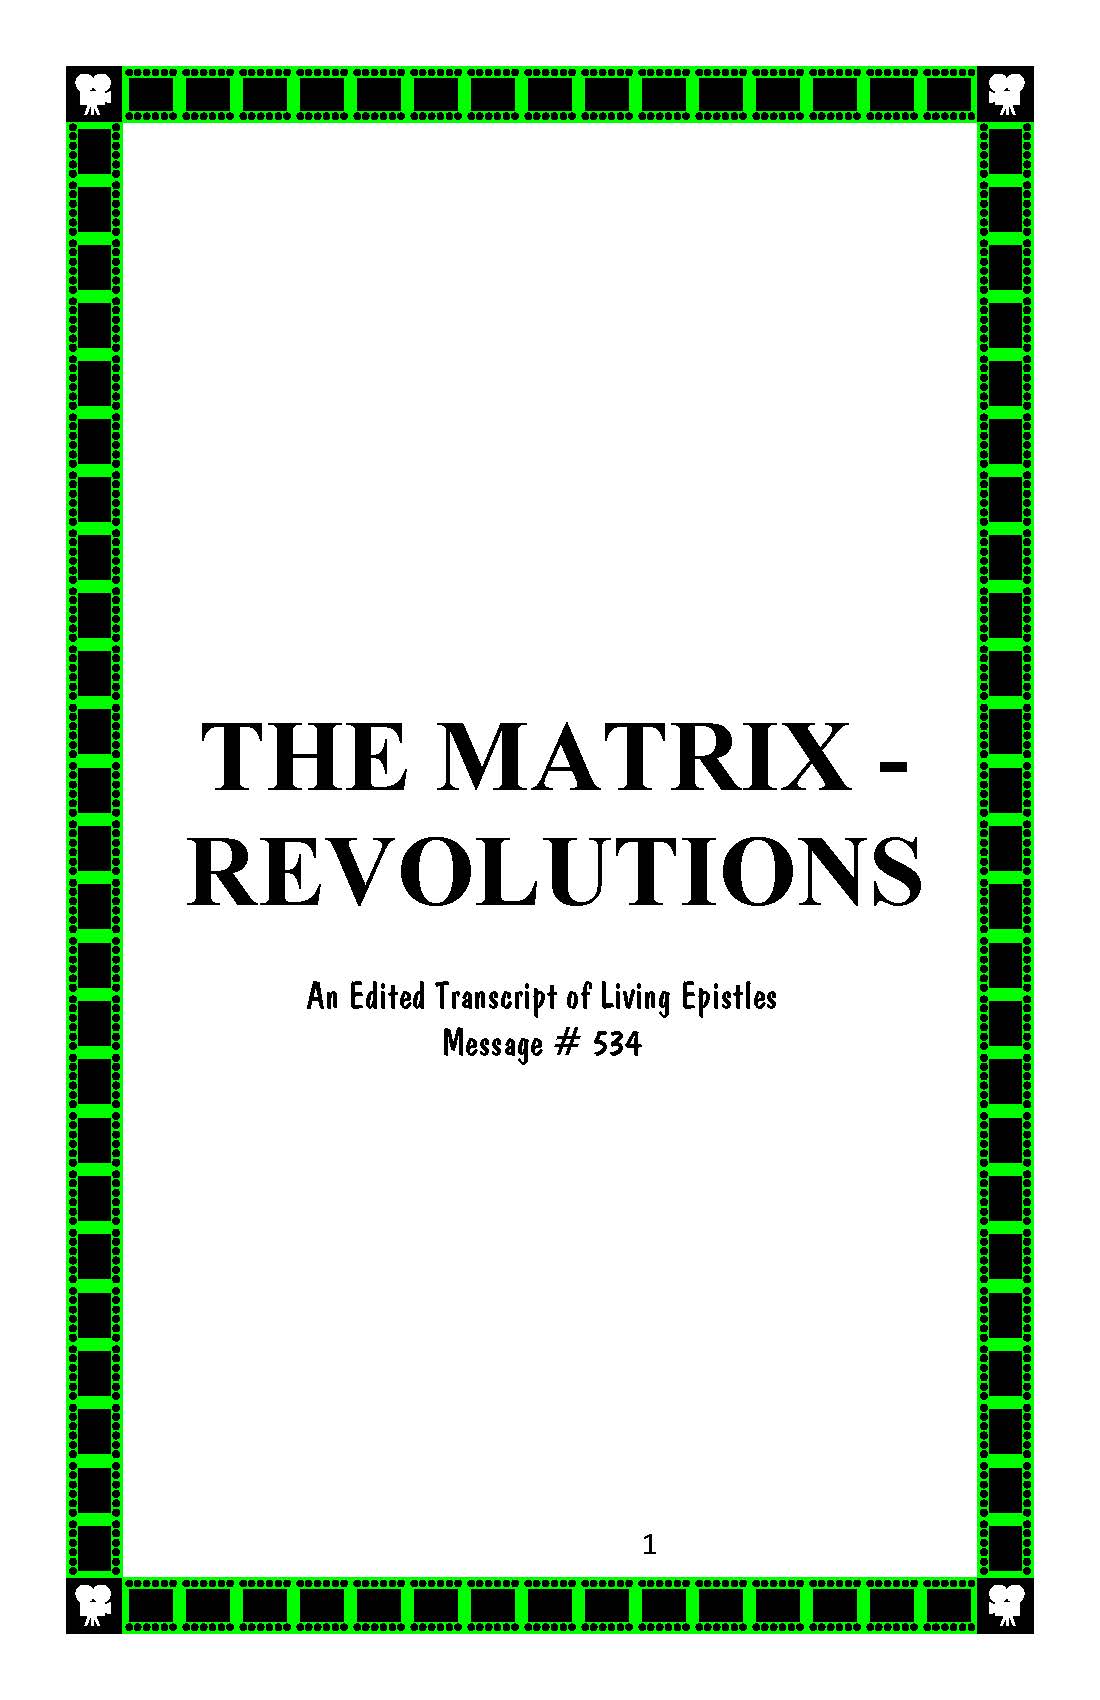 MATRIX REVOLUTIONS 534 LEM BOOK COVER 030116